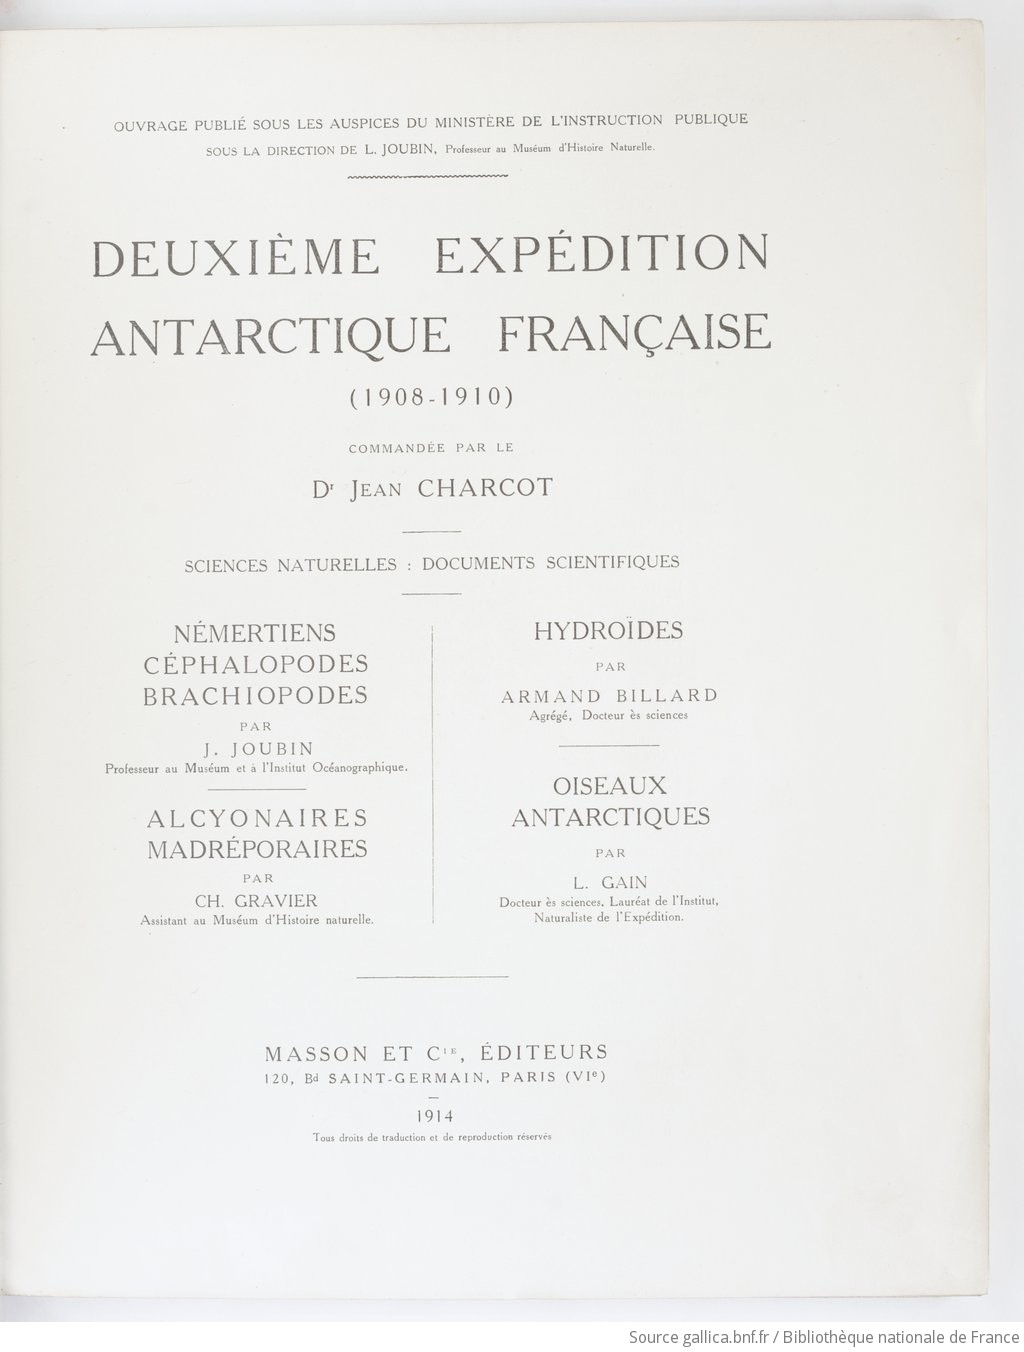 Némertiens, Céphalopodes, Brachiopodes / par J. ["sic pour" L.] Joubin,.... Alcyonaires, Madréporaires / par Ch. Gravier,.... Hydroïdes / par Armand Billard,.... Oiseaux antarctiques / par L. Gain,...